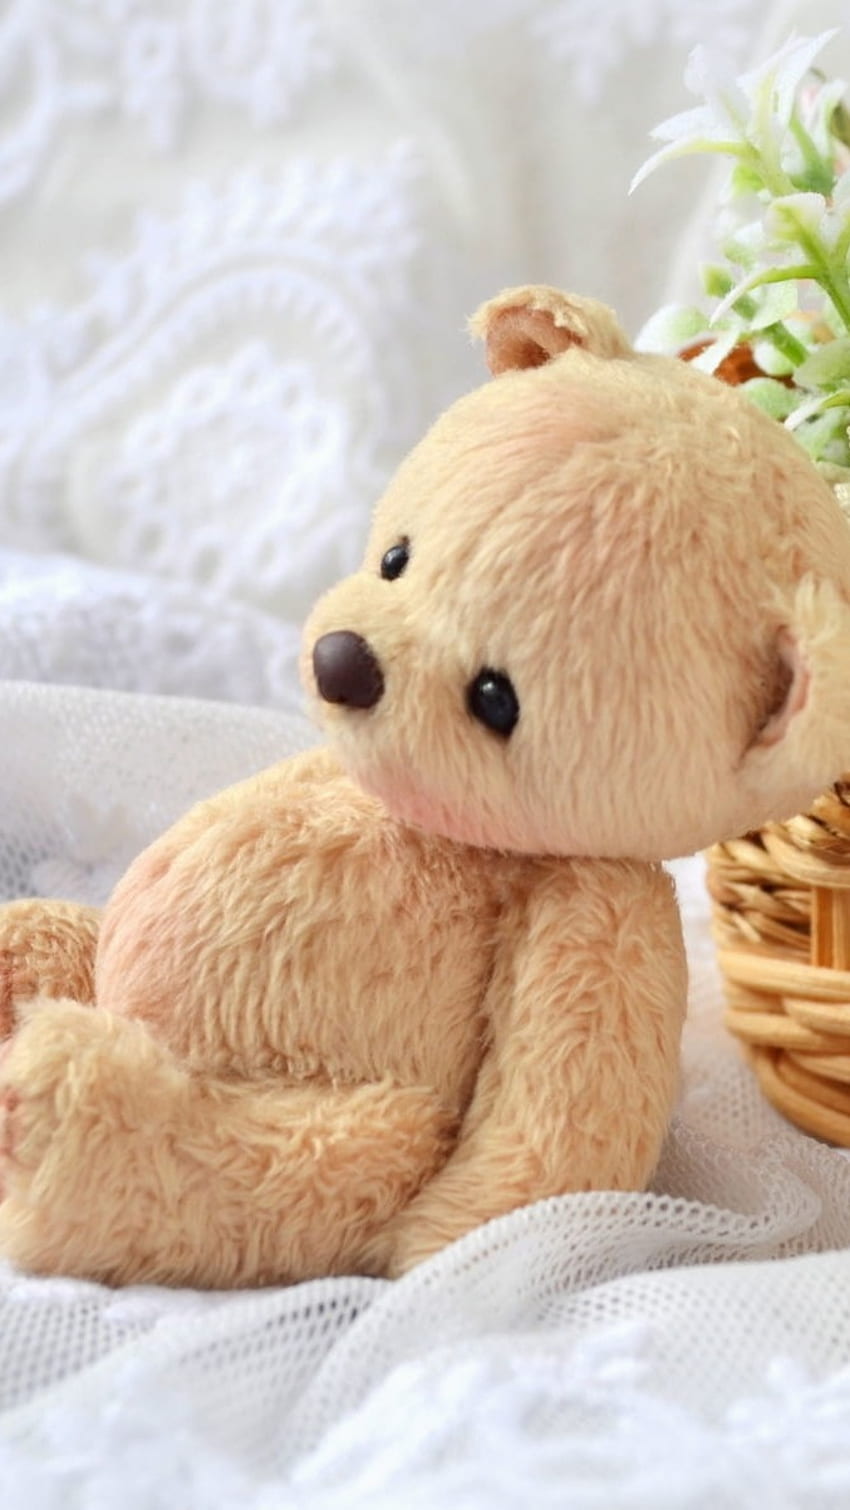 Little teddy bear HD wallpapers | Pxfuel